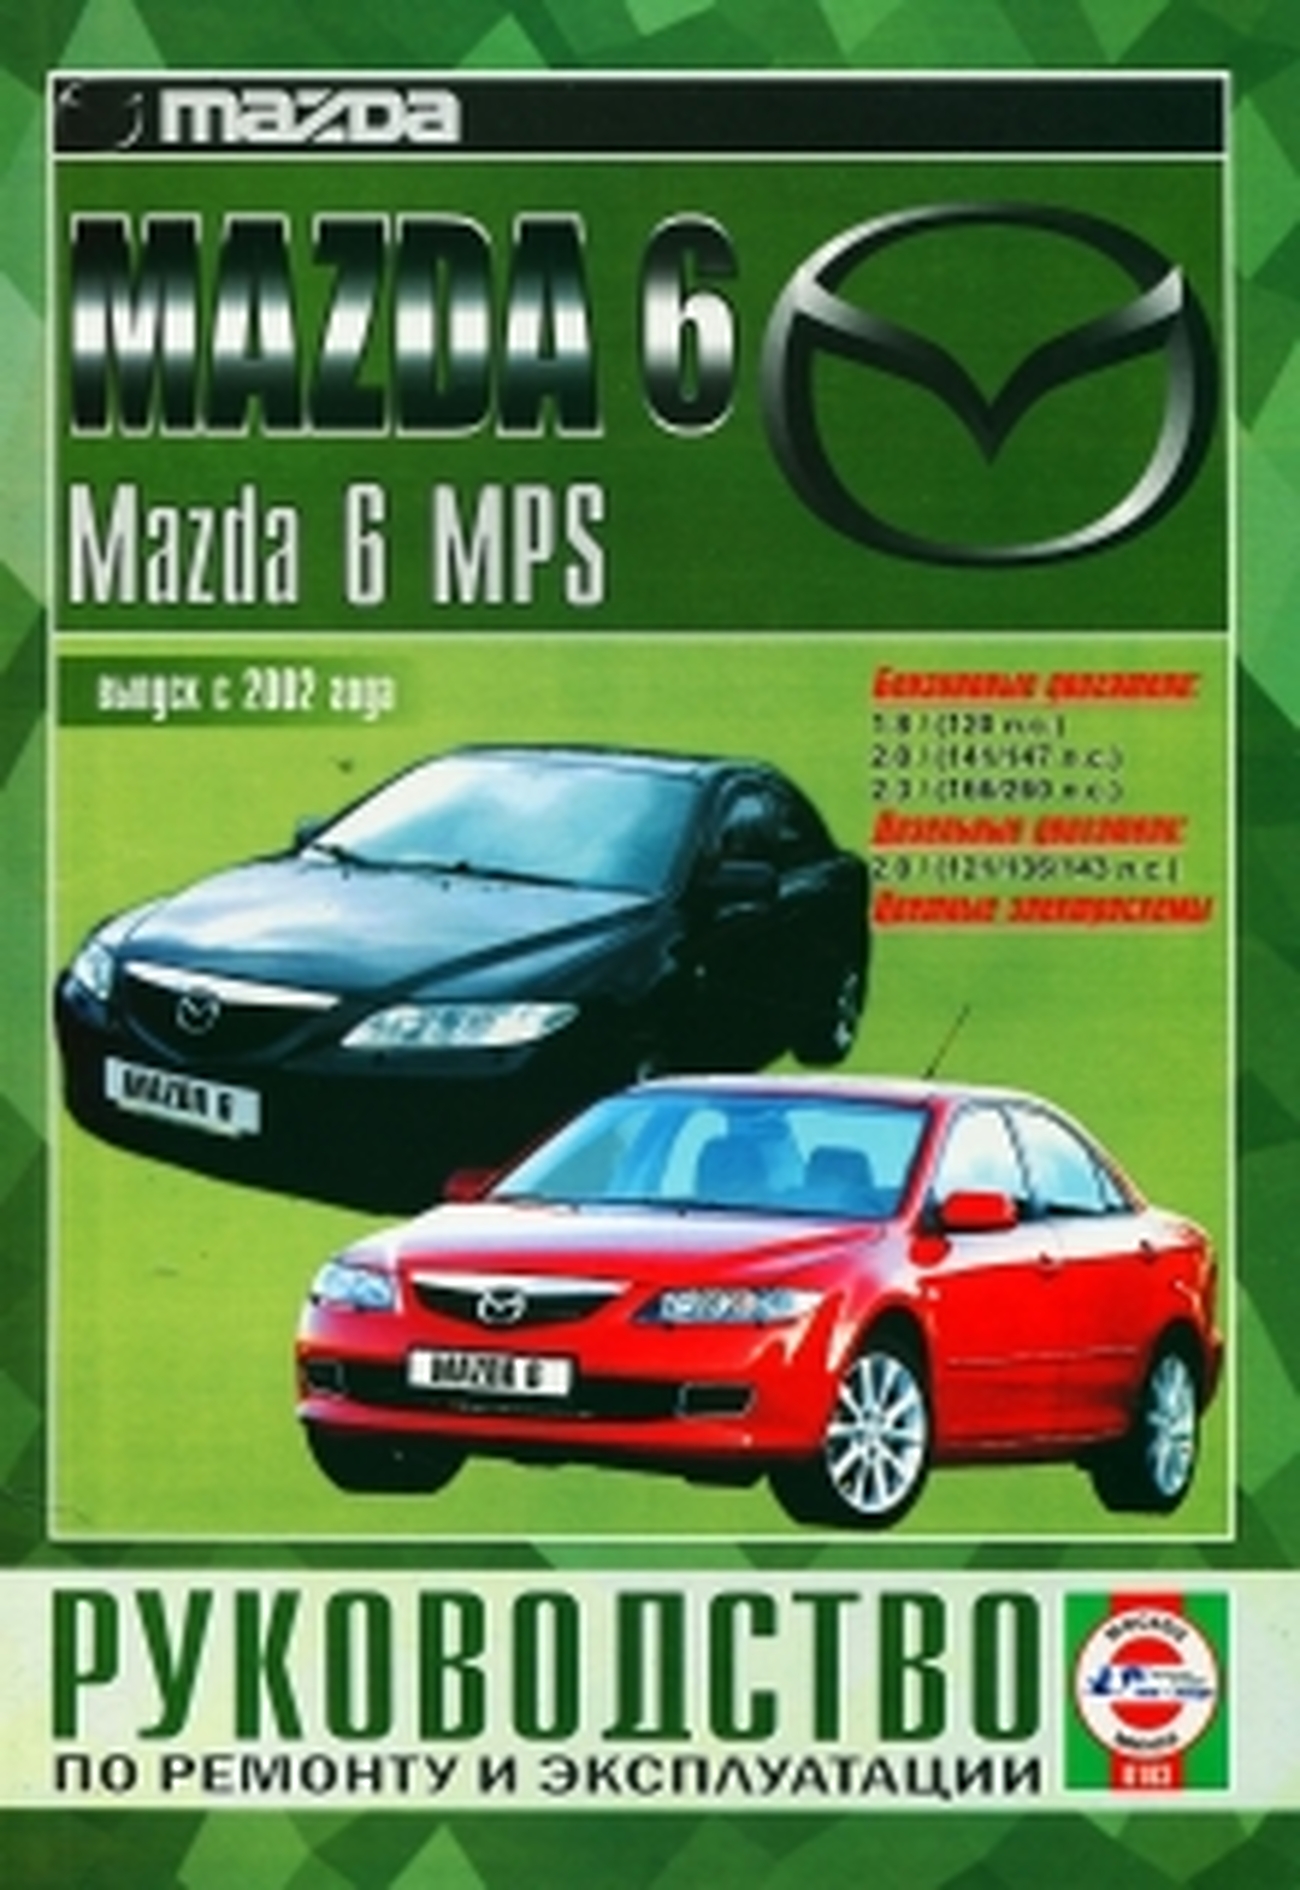 Книга: MAZDA 6 / MAZDA 6 MPS (б , д) с 2002 г.в., рем., экспл., то | Чижовка